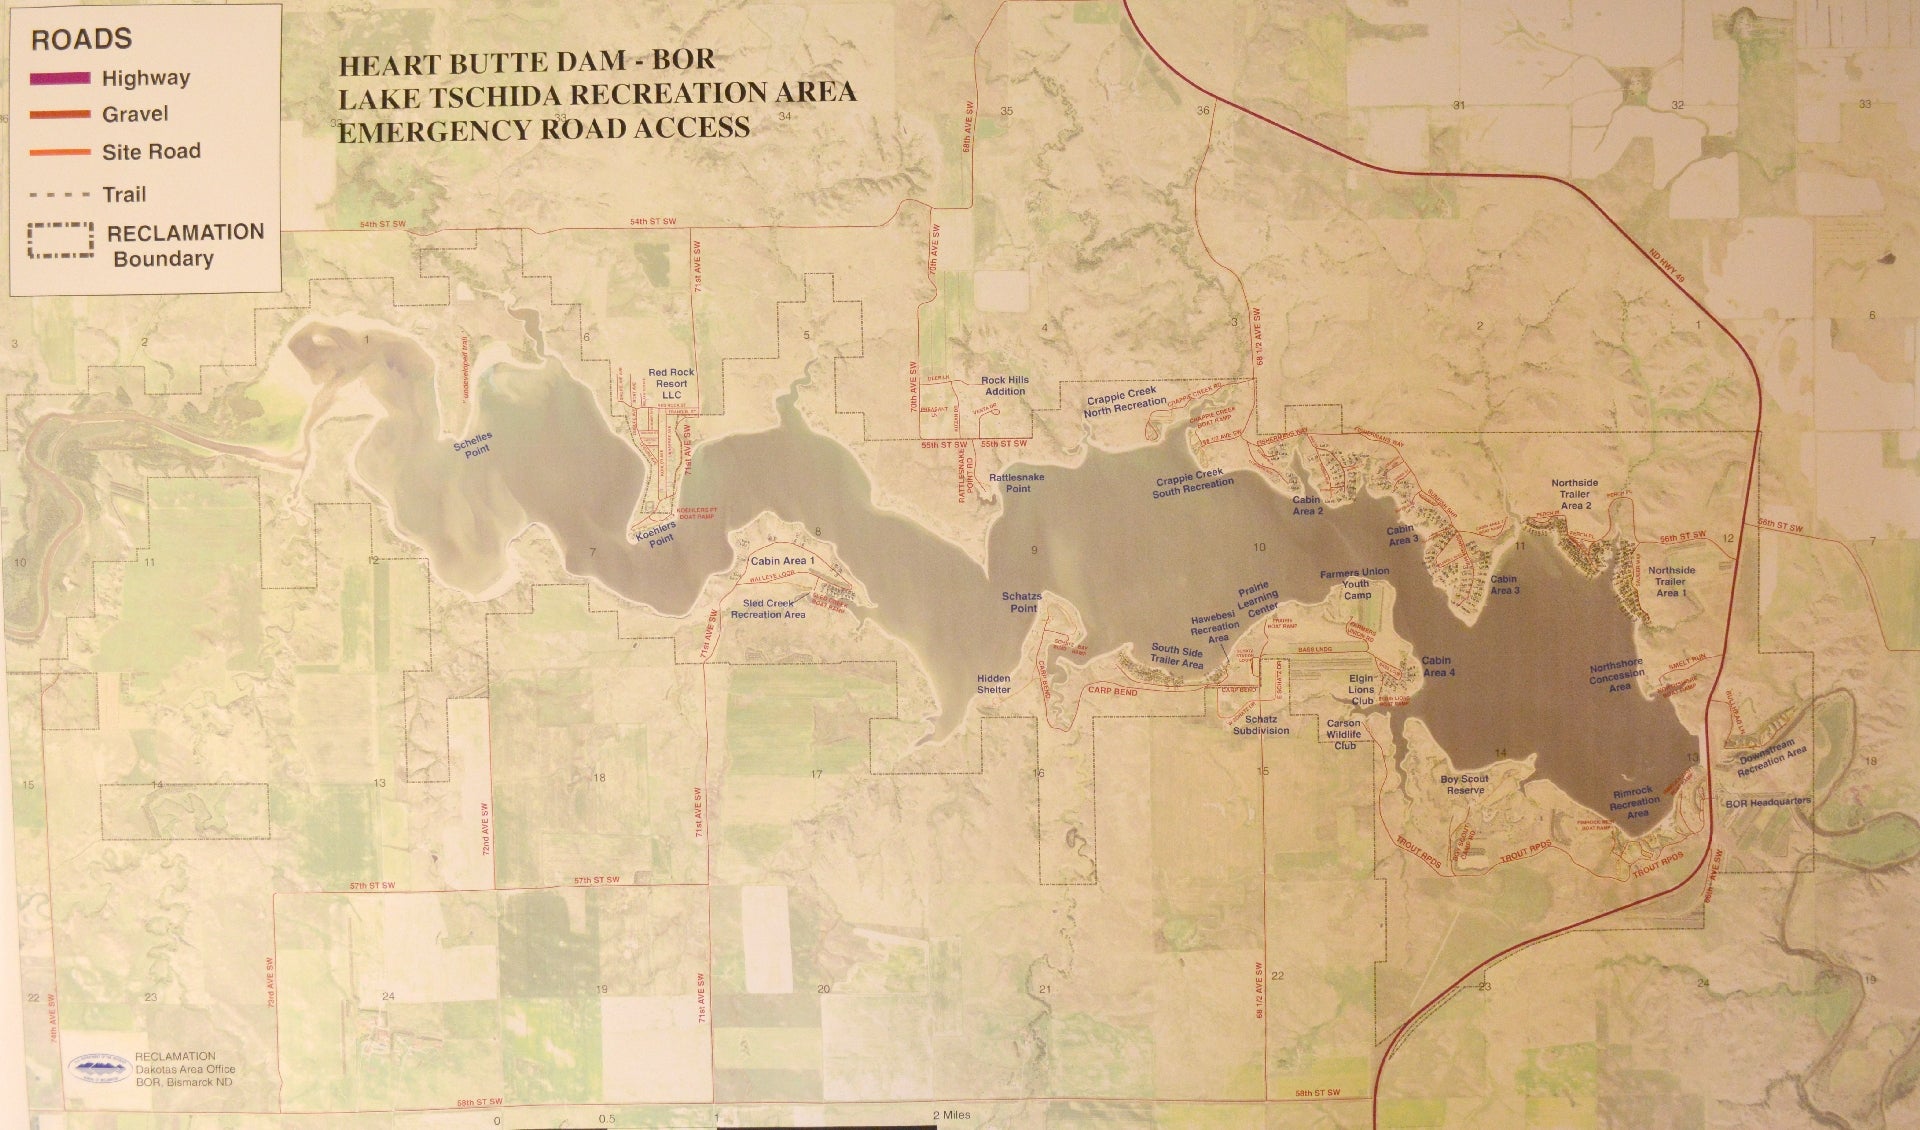 Heart Butte Reservoir map at Lake Tschida